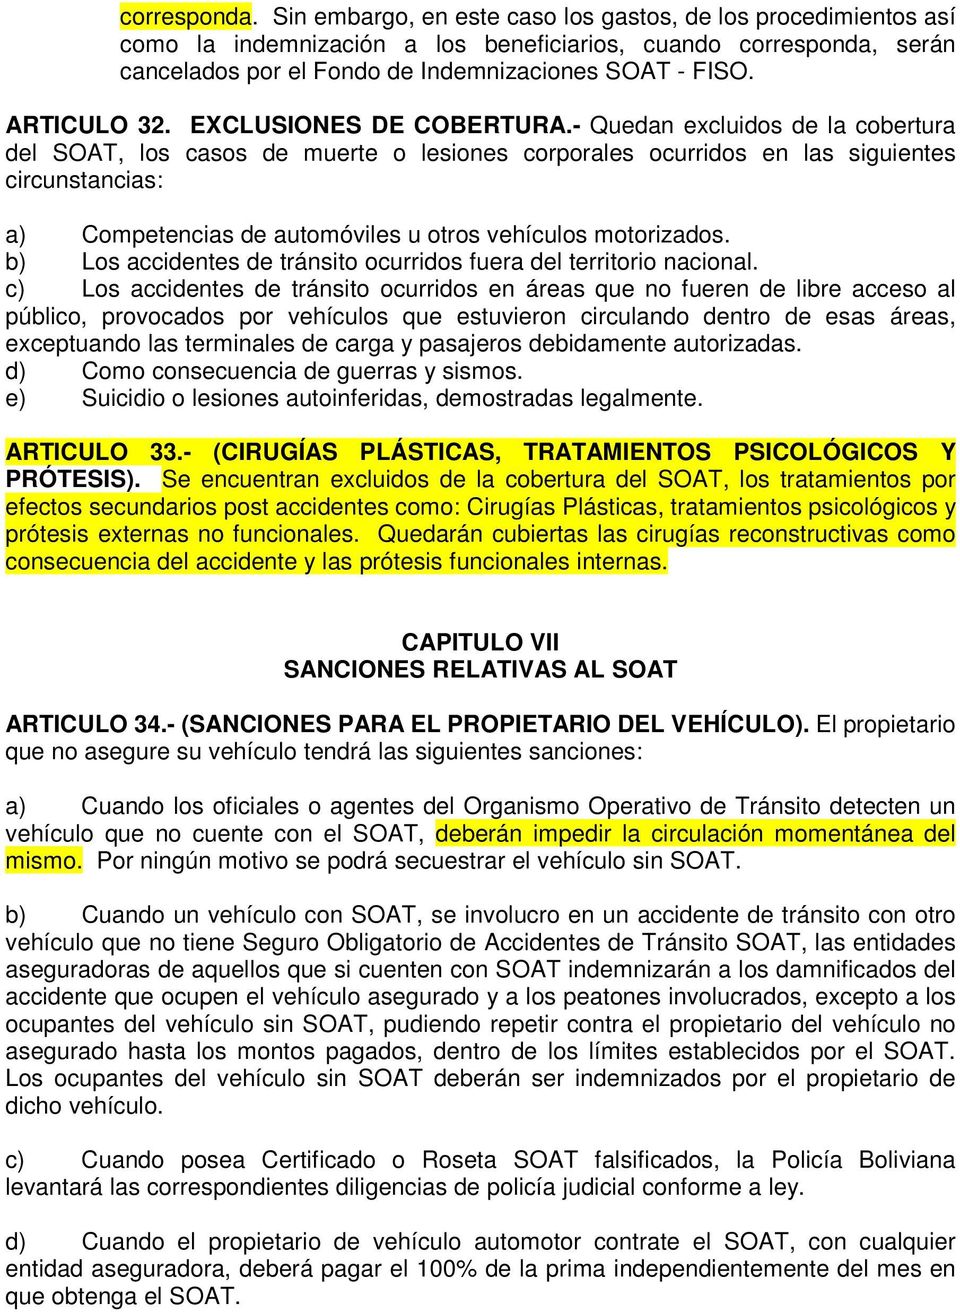 ARTICULO 32. EXCLUSIONES DE COBERTURA.